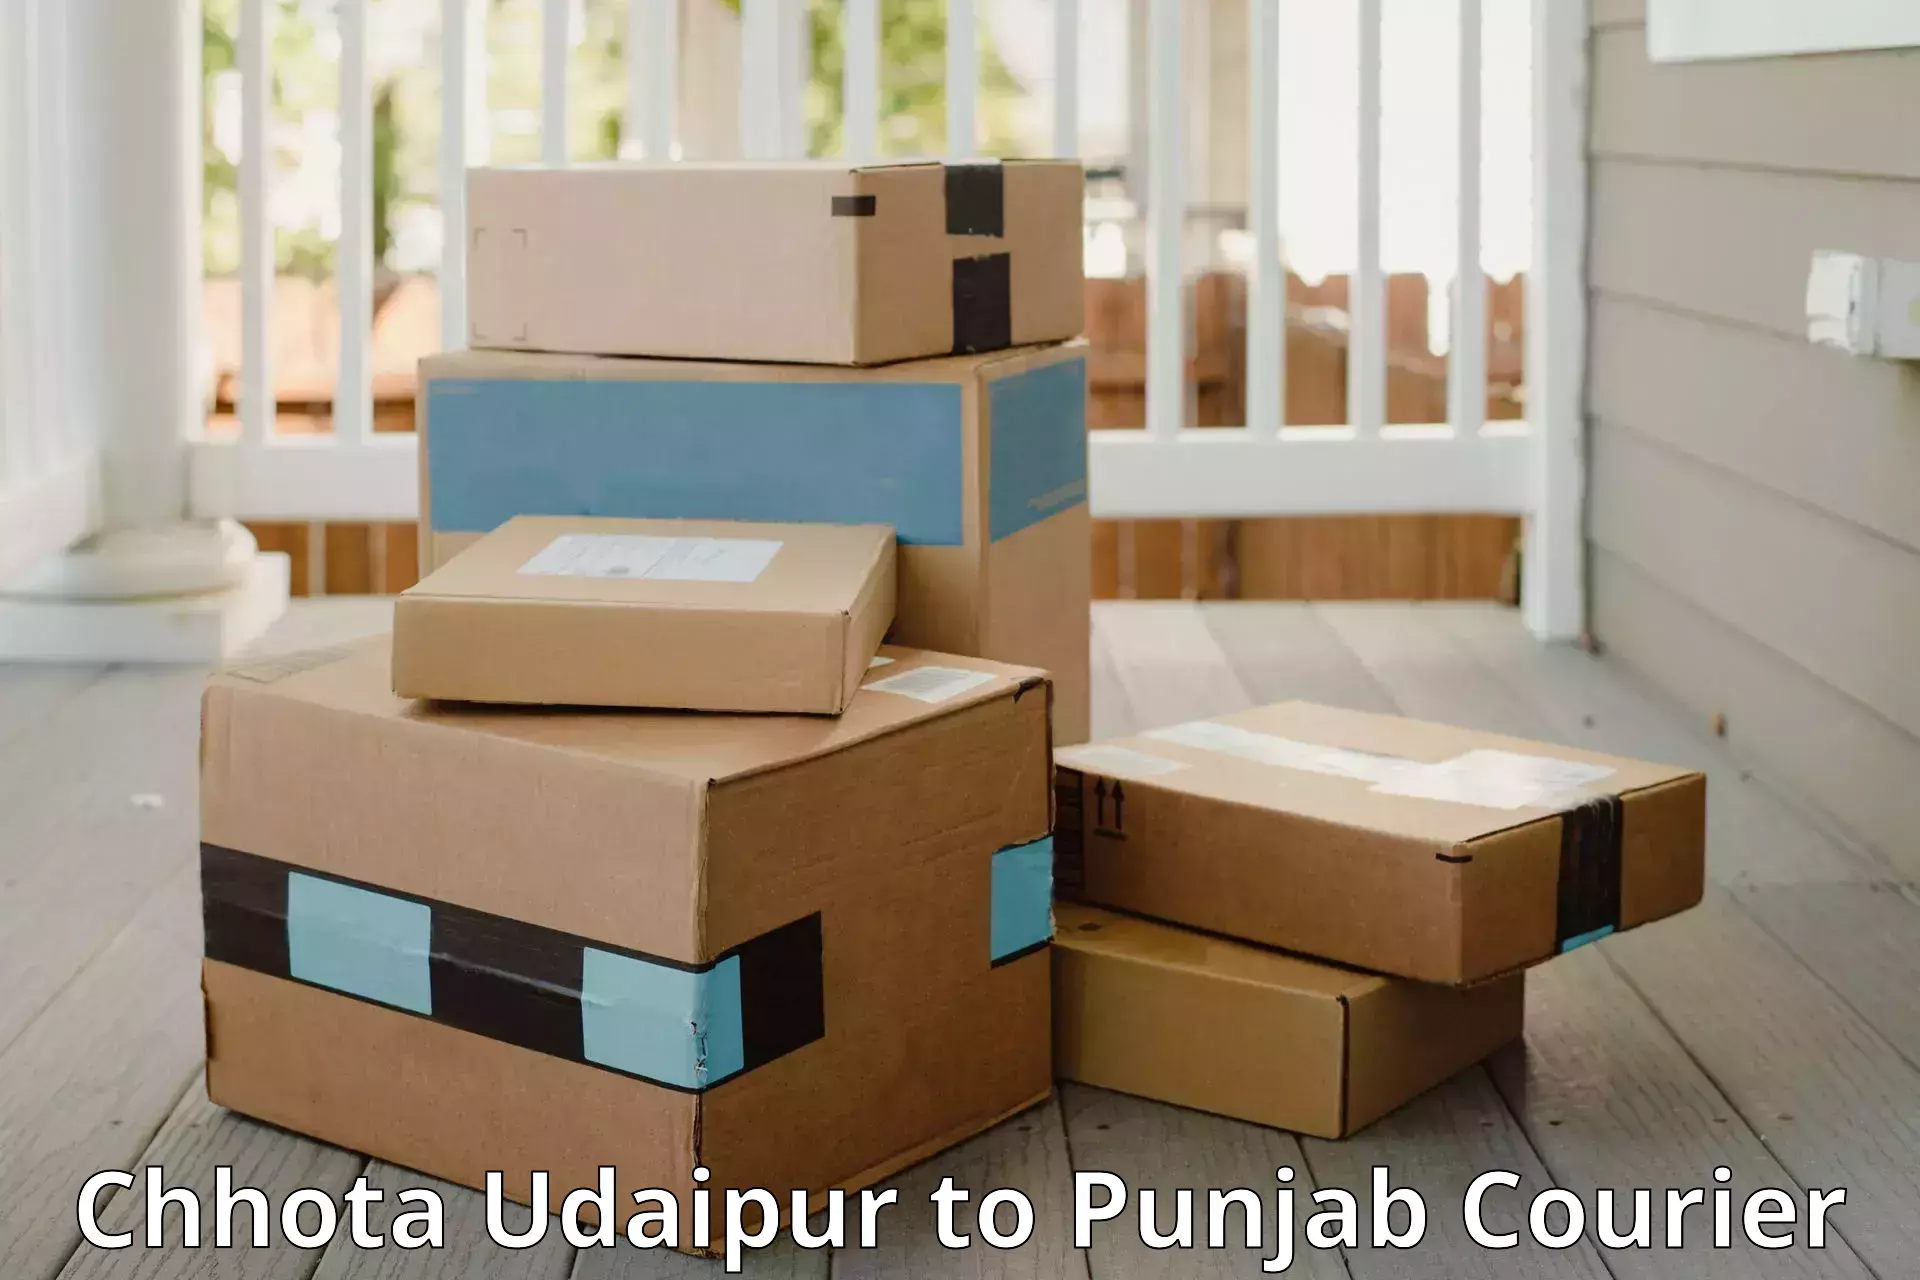 Luggage transfer service Chhota Udaipur to Central University of Punjab Bathinda